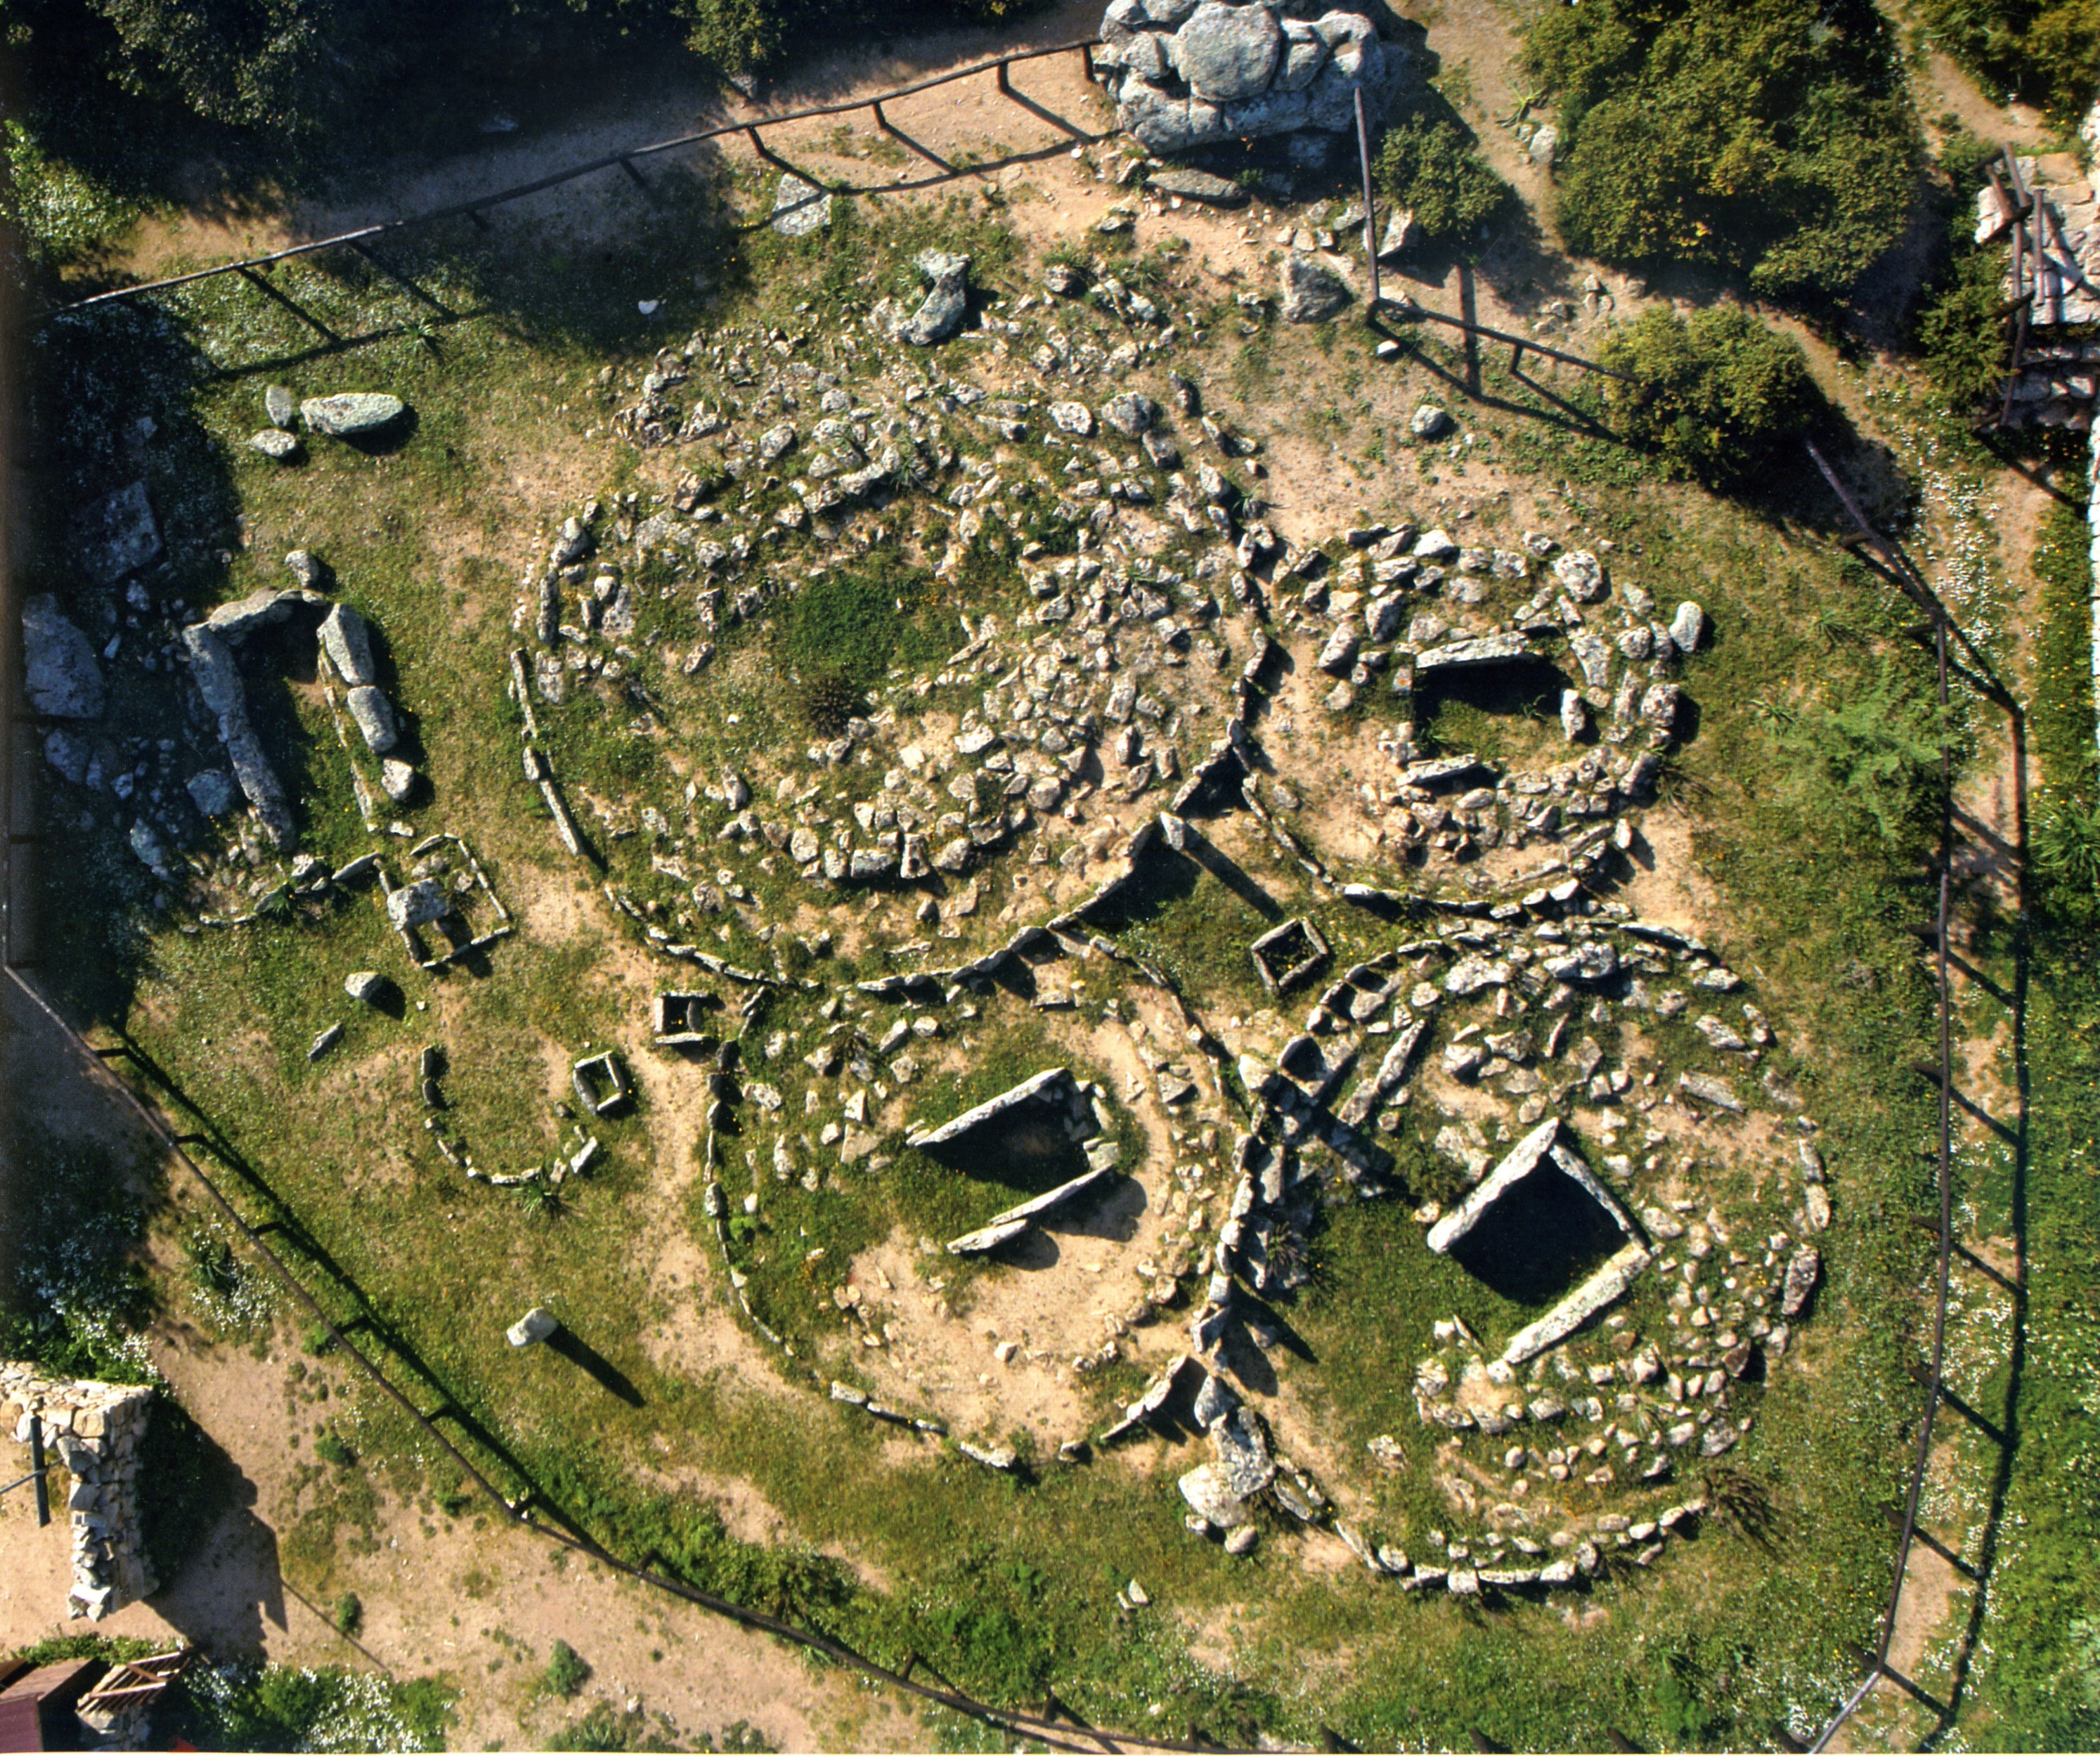 Li Muri (area ad uso funerario, necropoli) - Arzachena (SS)  (prima metà IV millennio a.C)